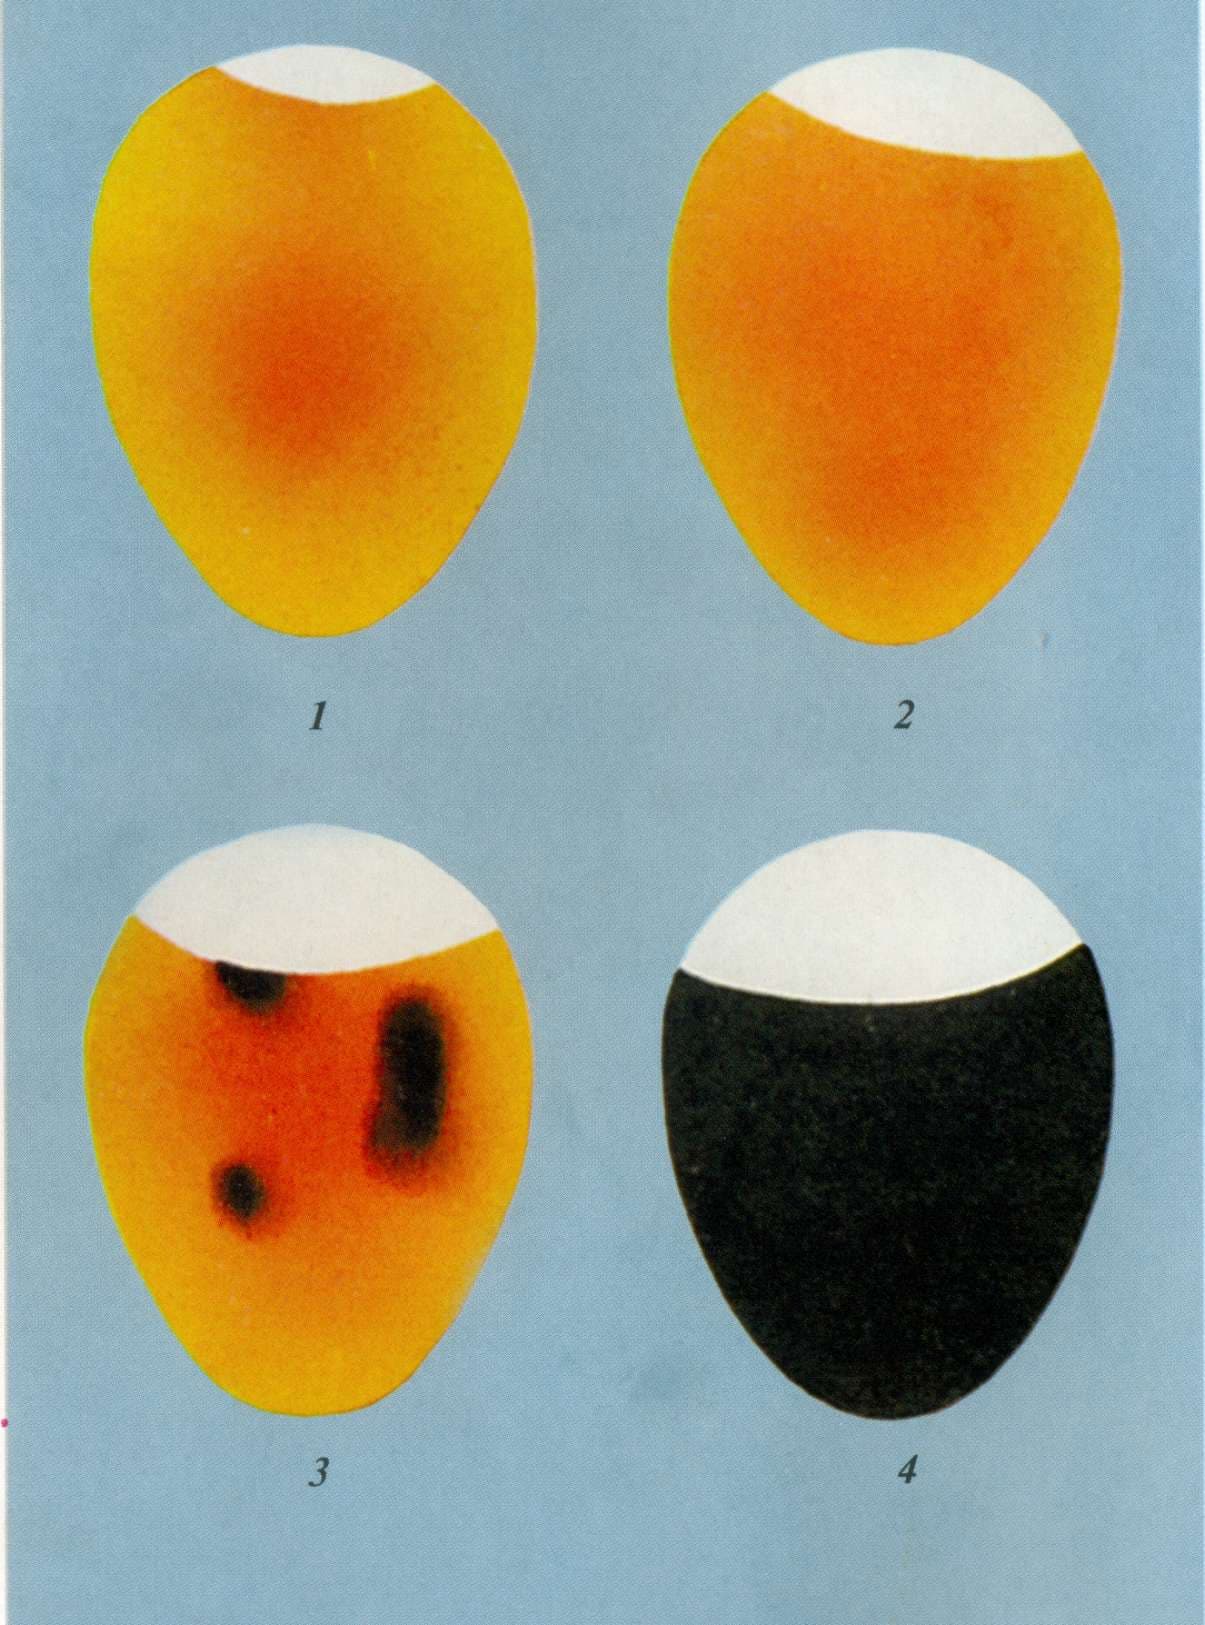 Как определить оплодотворенное яйцо у кур или нет? Способы проверки с помощью овоскопа и без него